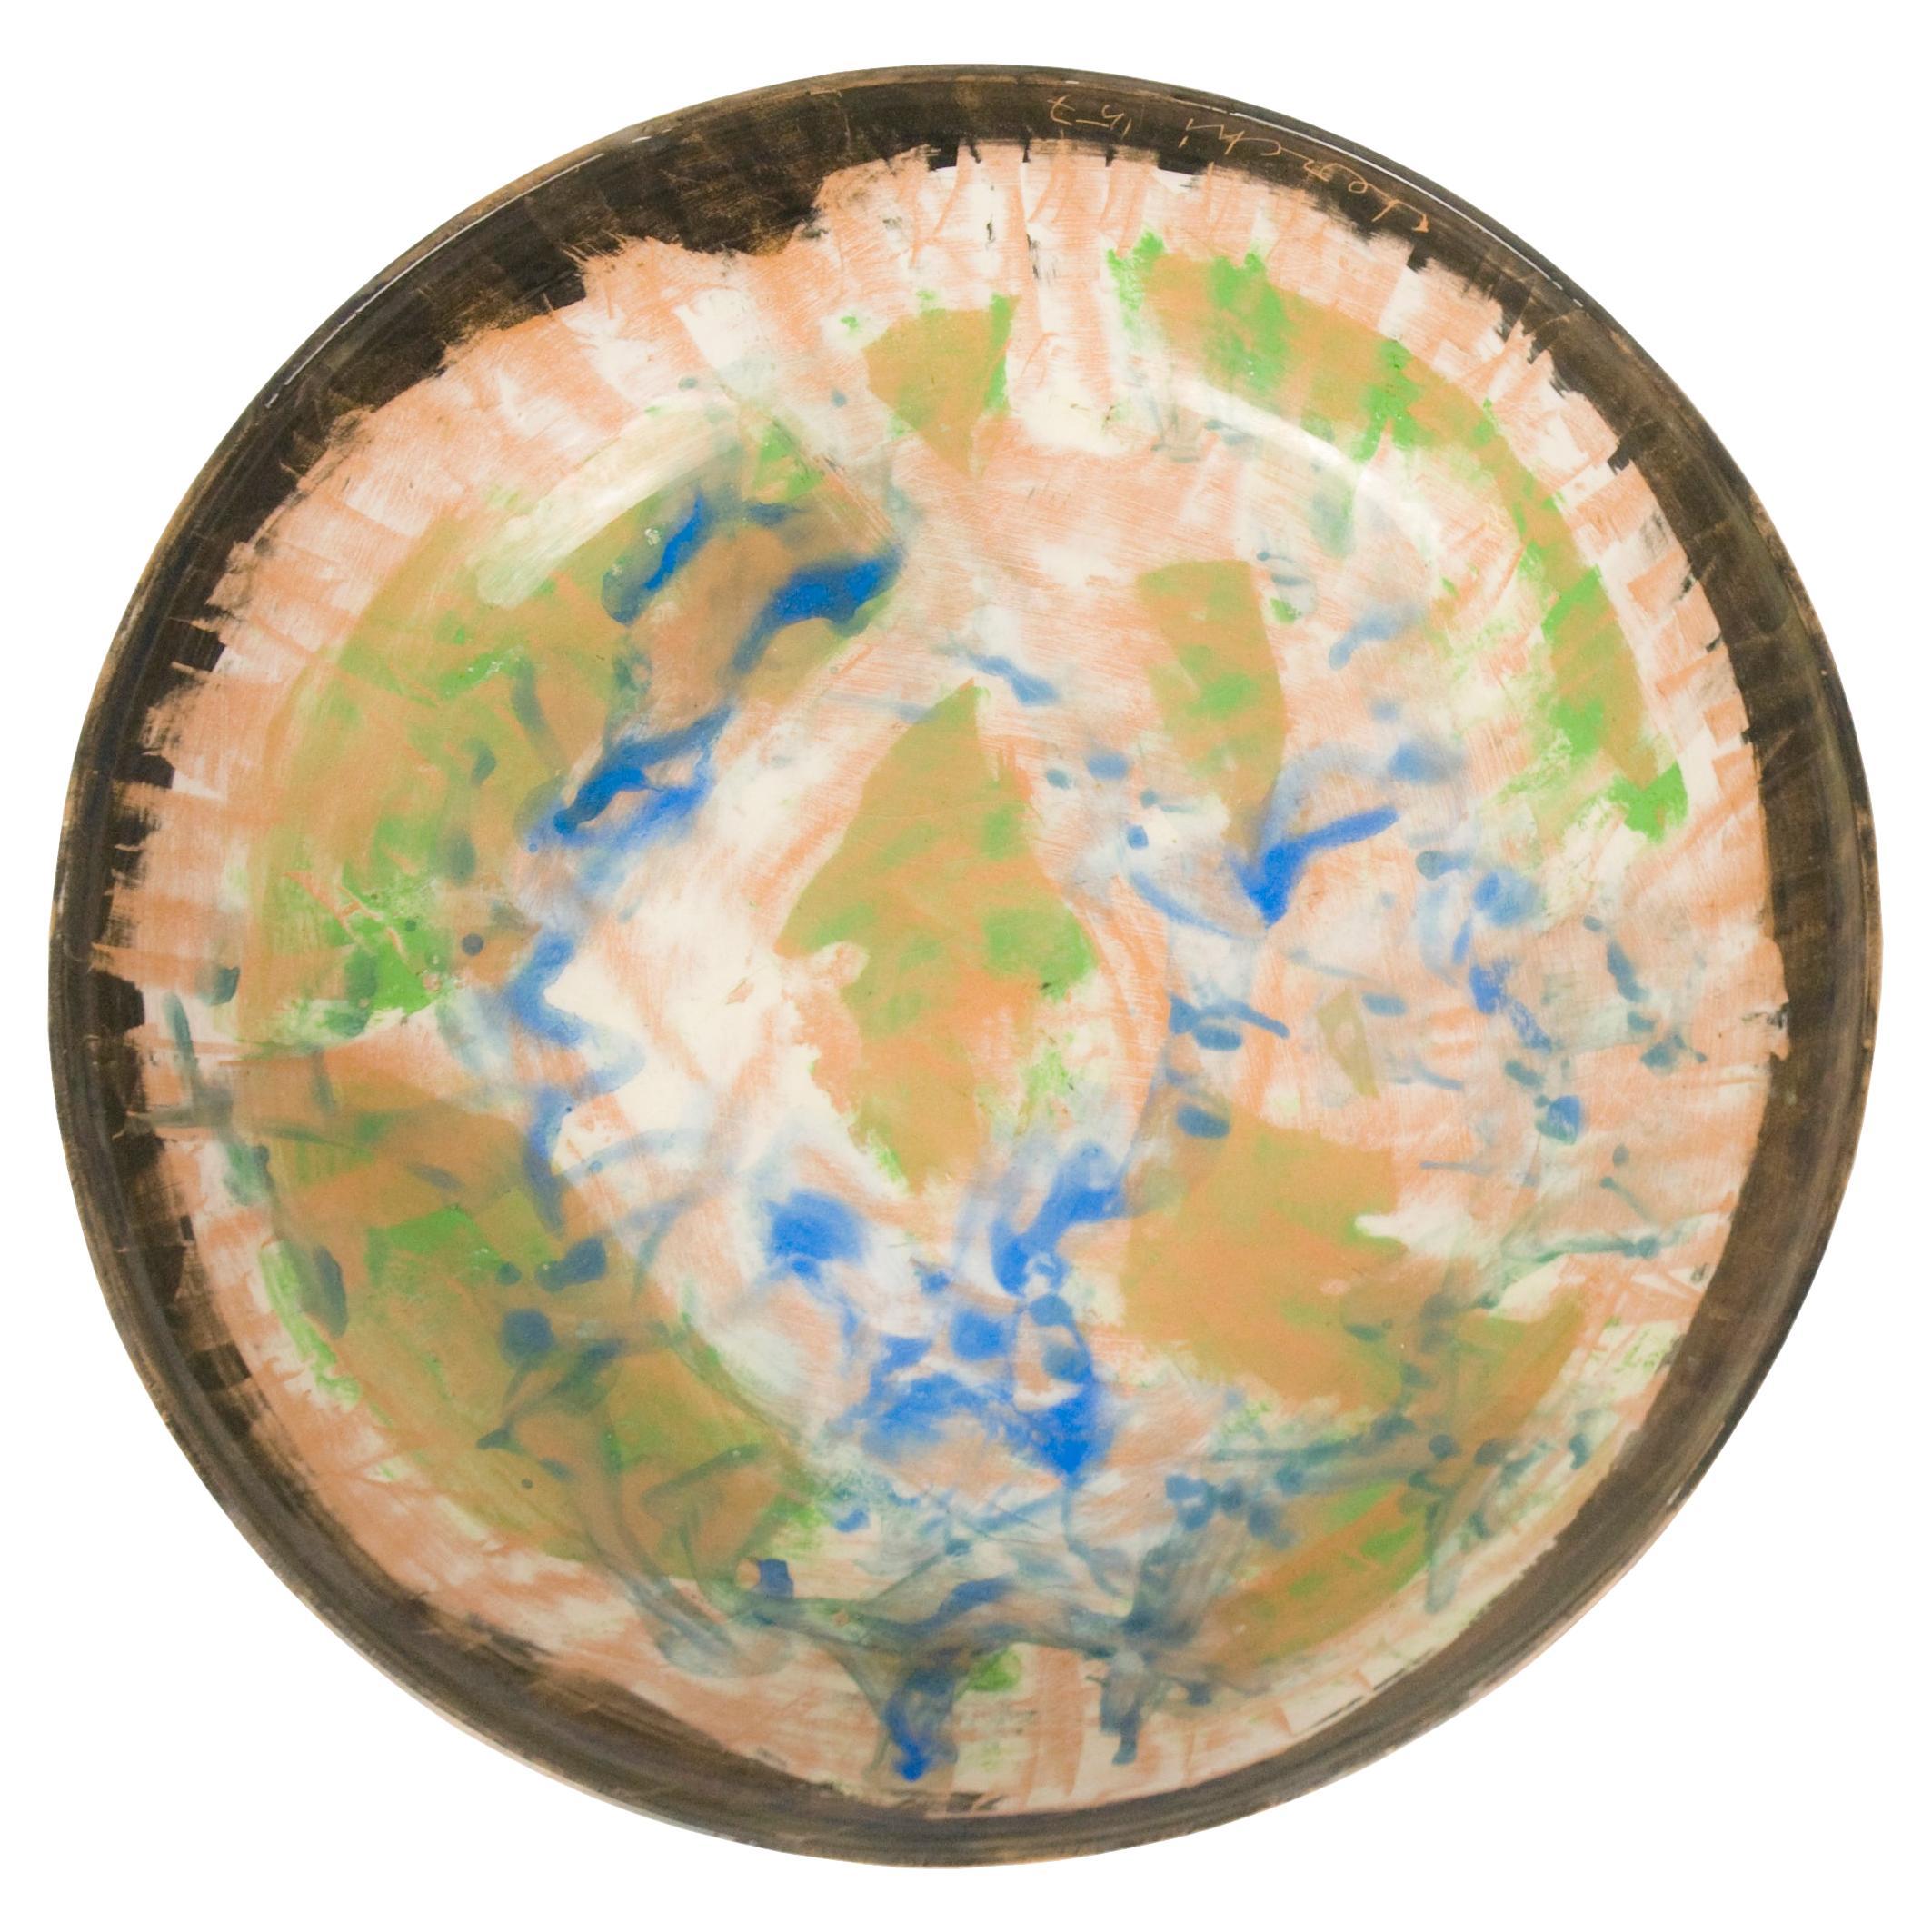 Informal Ceramic Plate by Sandro Cherchi for Ceramiche S. Giorgio, 1957